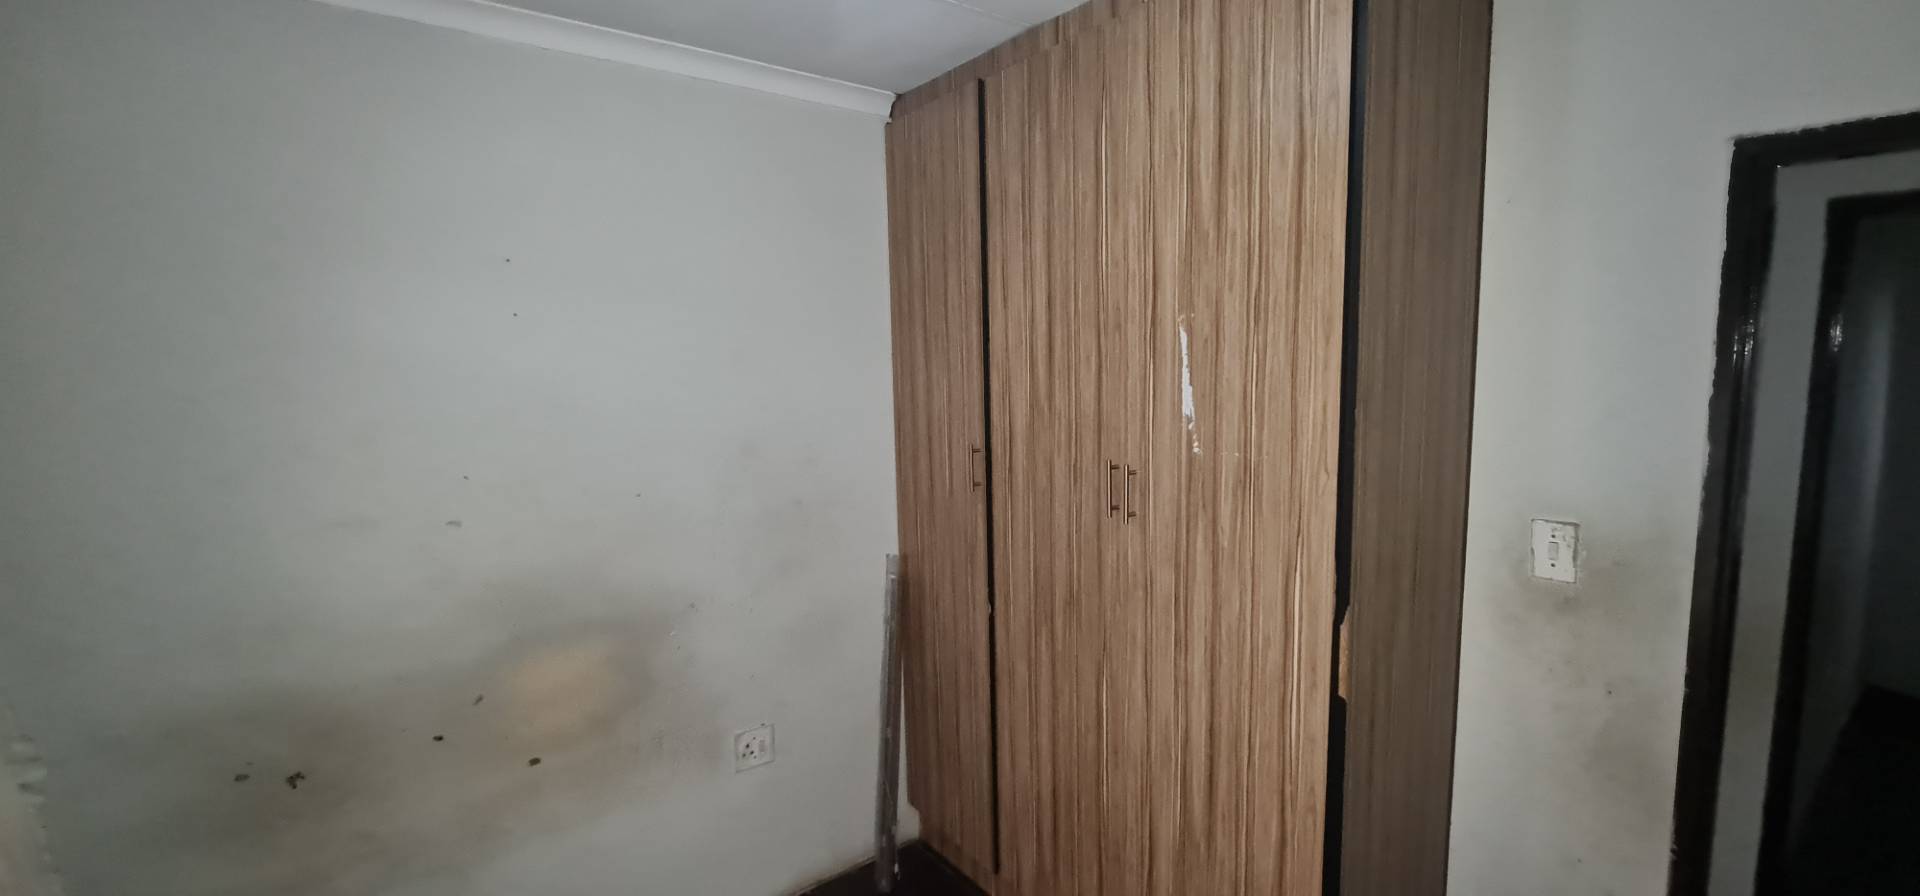 To Let 3 Bedroom Property for Rent in Vosloorus Gauteng